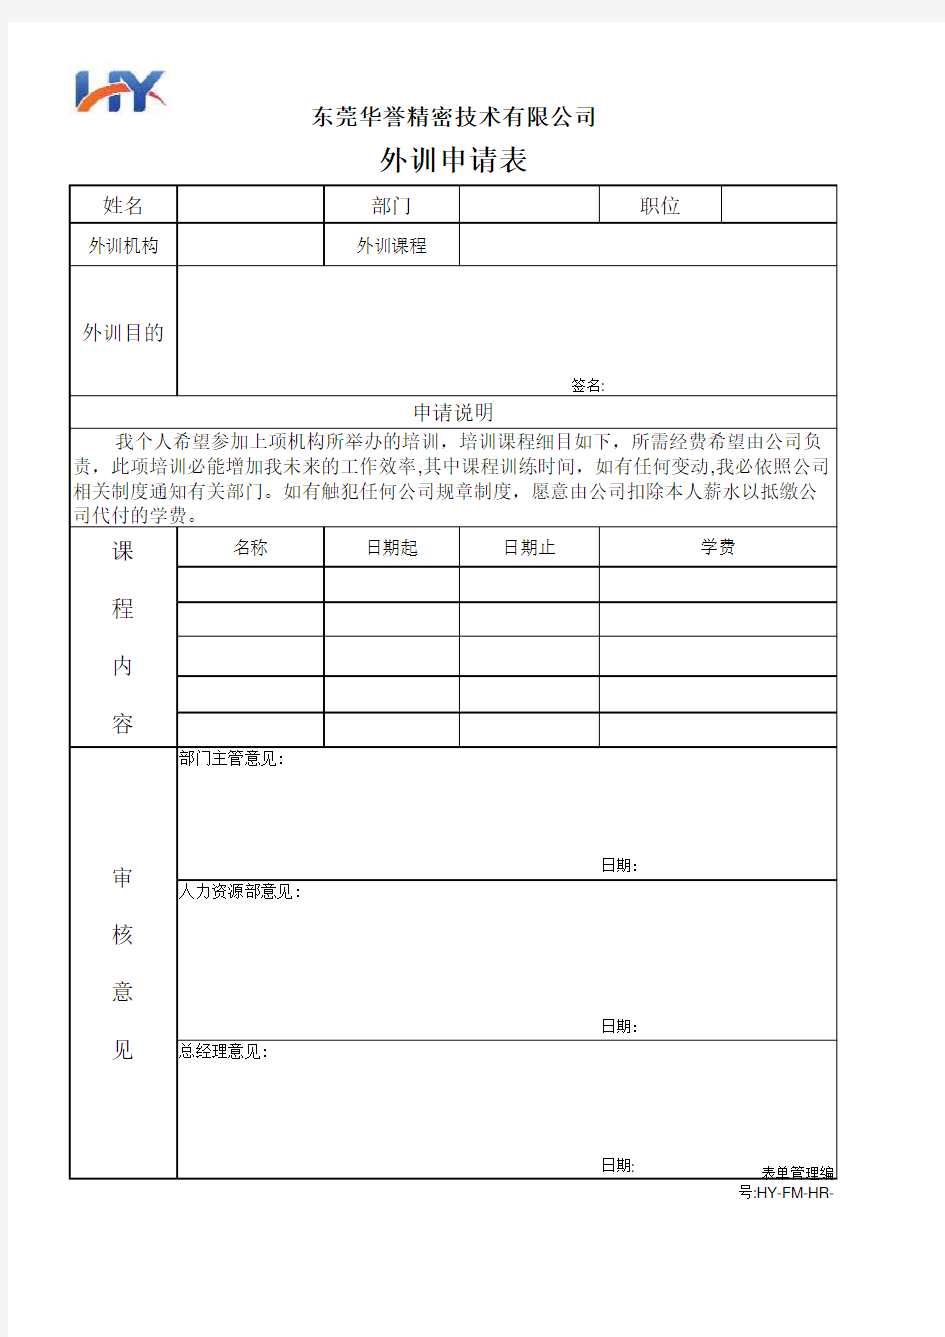 HY-FM-HR-0039外训申请表V1.0(2019-12)